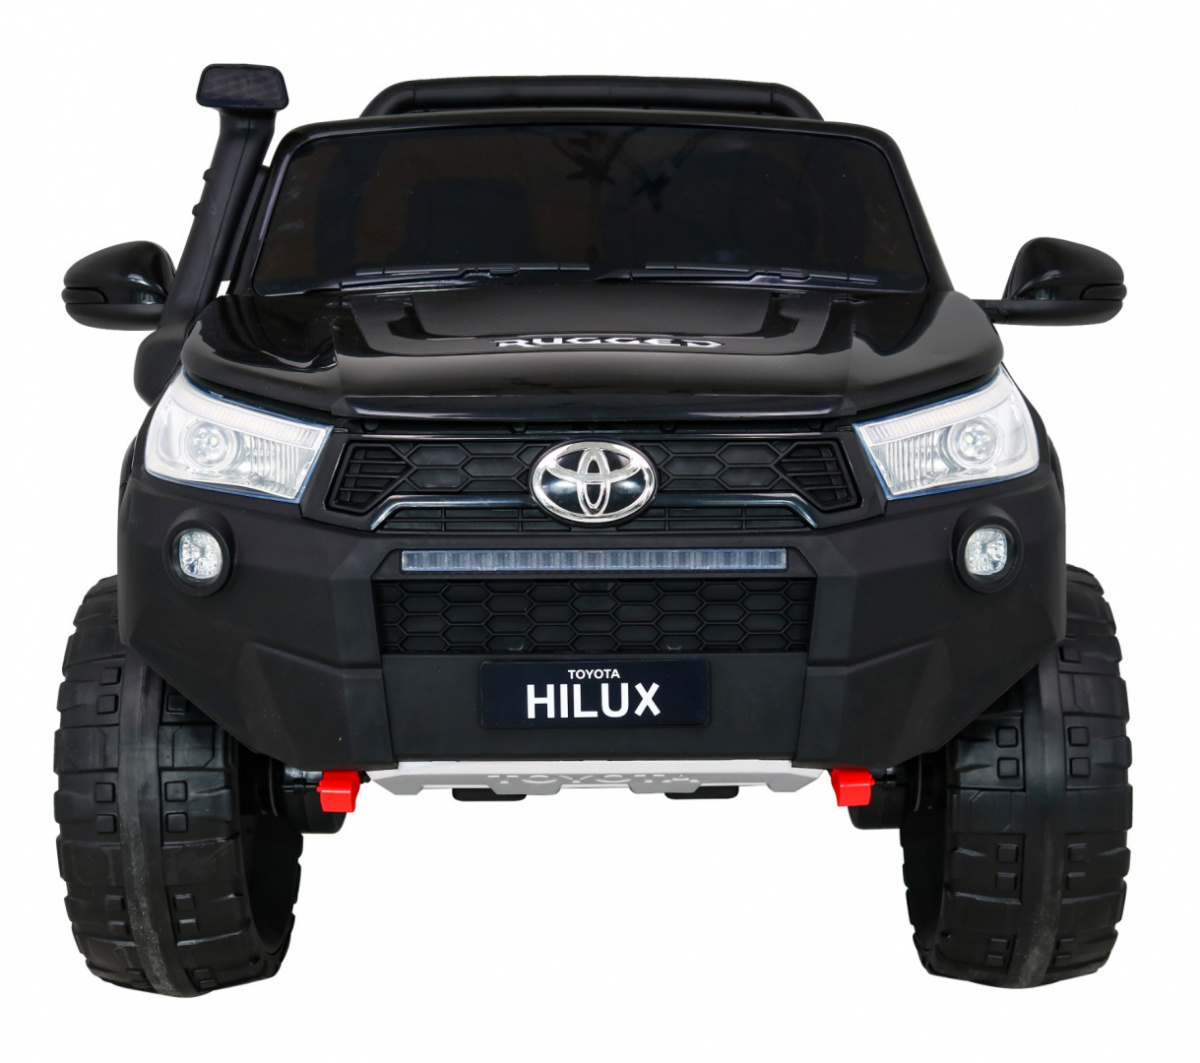 Elektromos kisautó Gio Toyota Hilux 4x4 kétszemélyes terepjáró bőrülés, 2.4 GHZ távirányító, gumi kerék, slusszkulcs, 2db 12 Voltos akkumulátor - kép 5